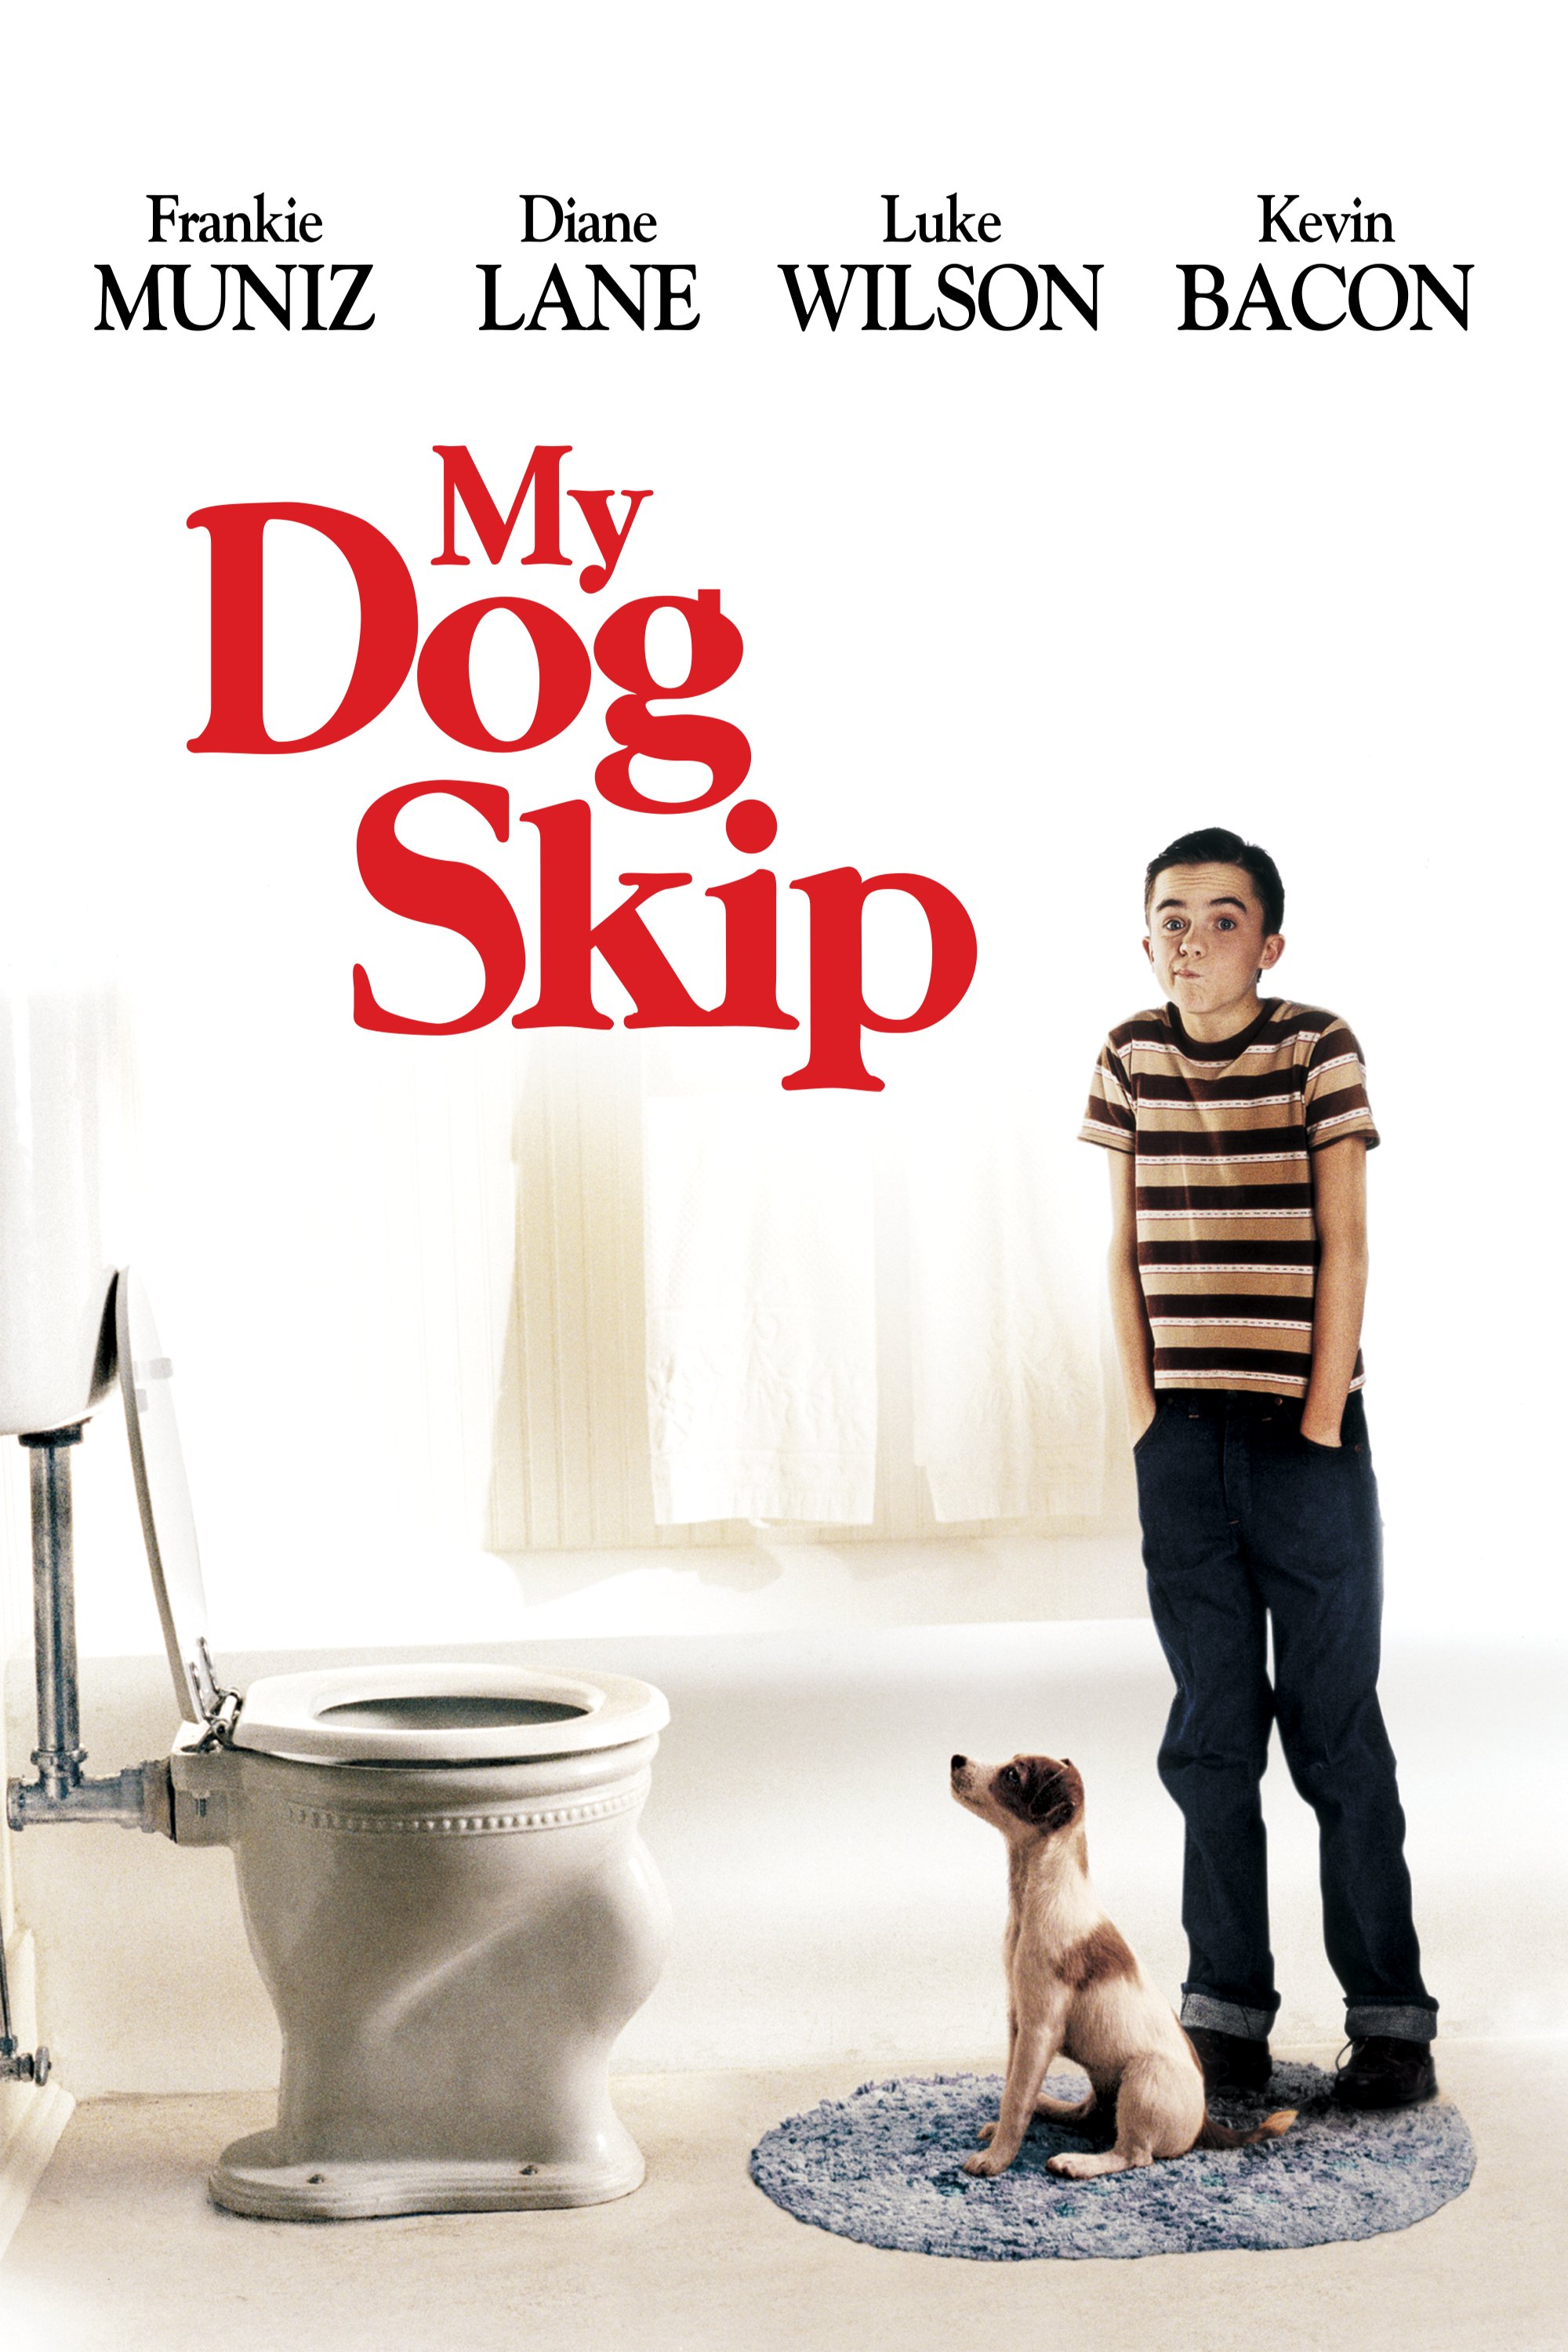 My Dog Skip - DVD [ 2000 ]  - Children Movies On DVD - Movies On GRUV